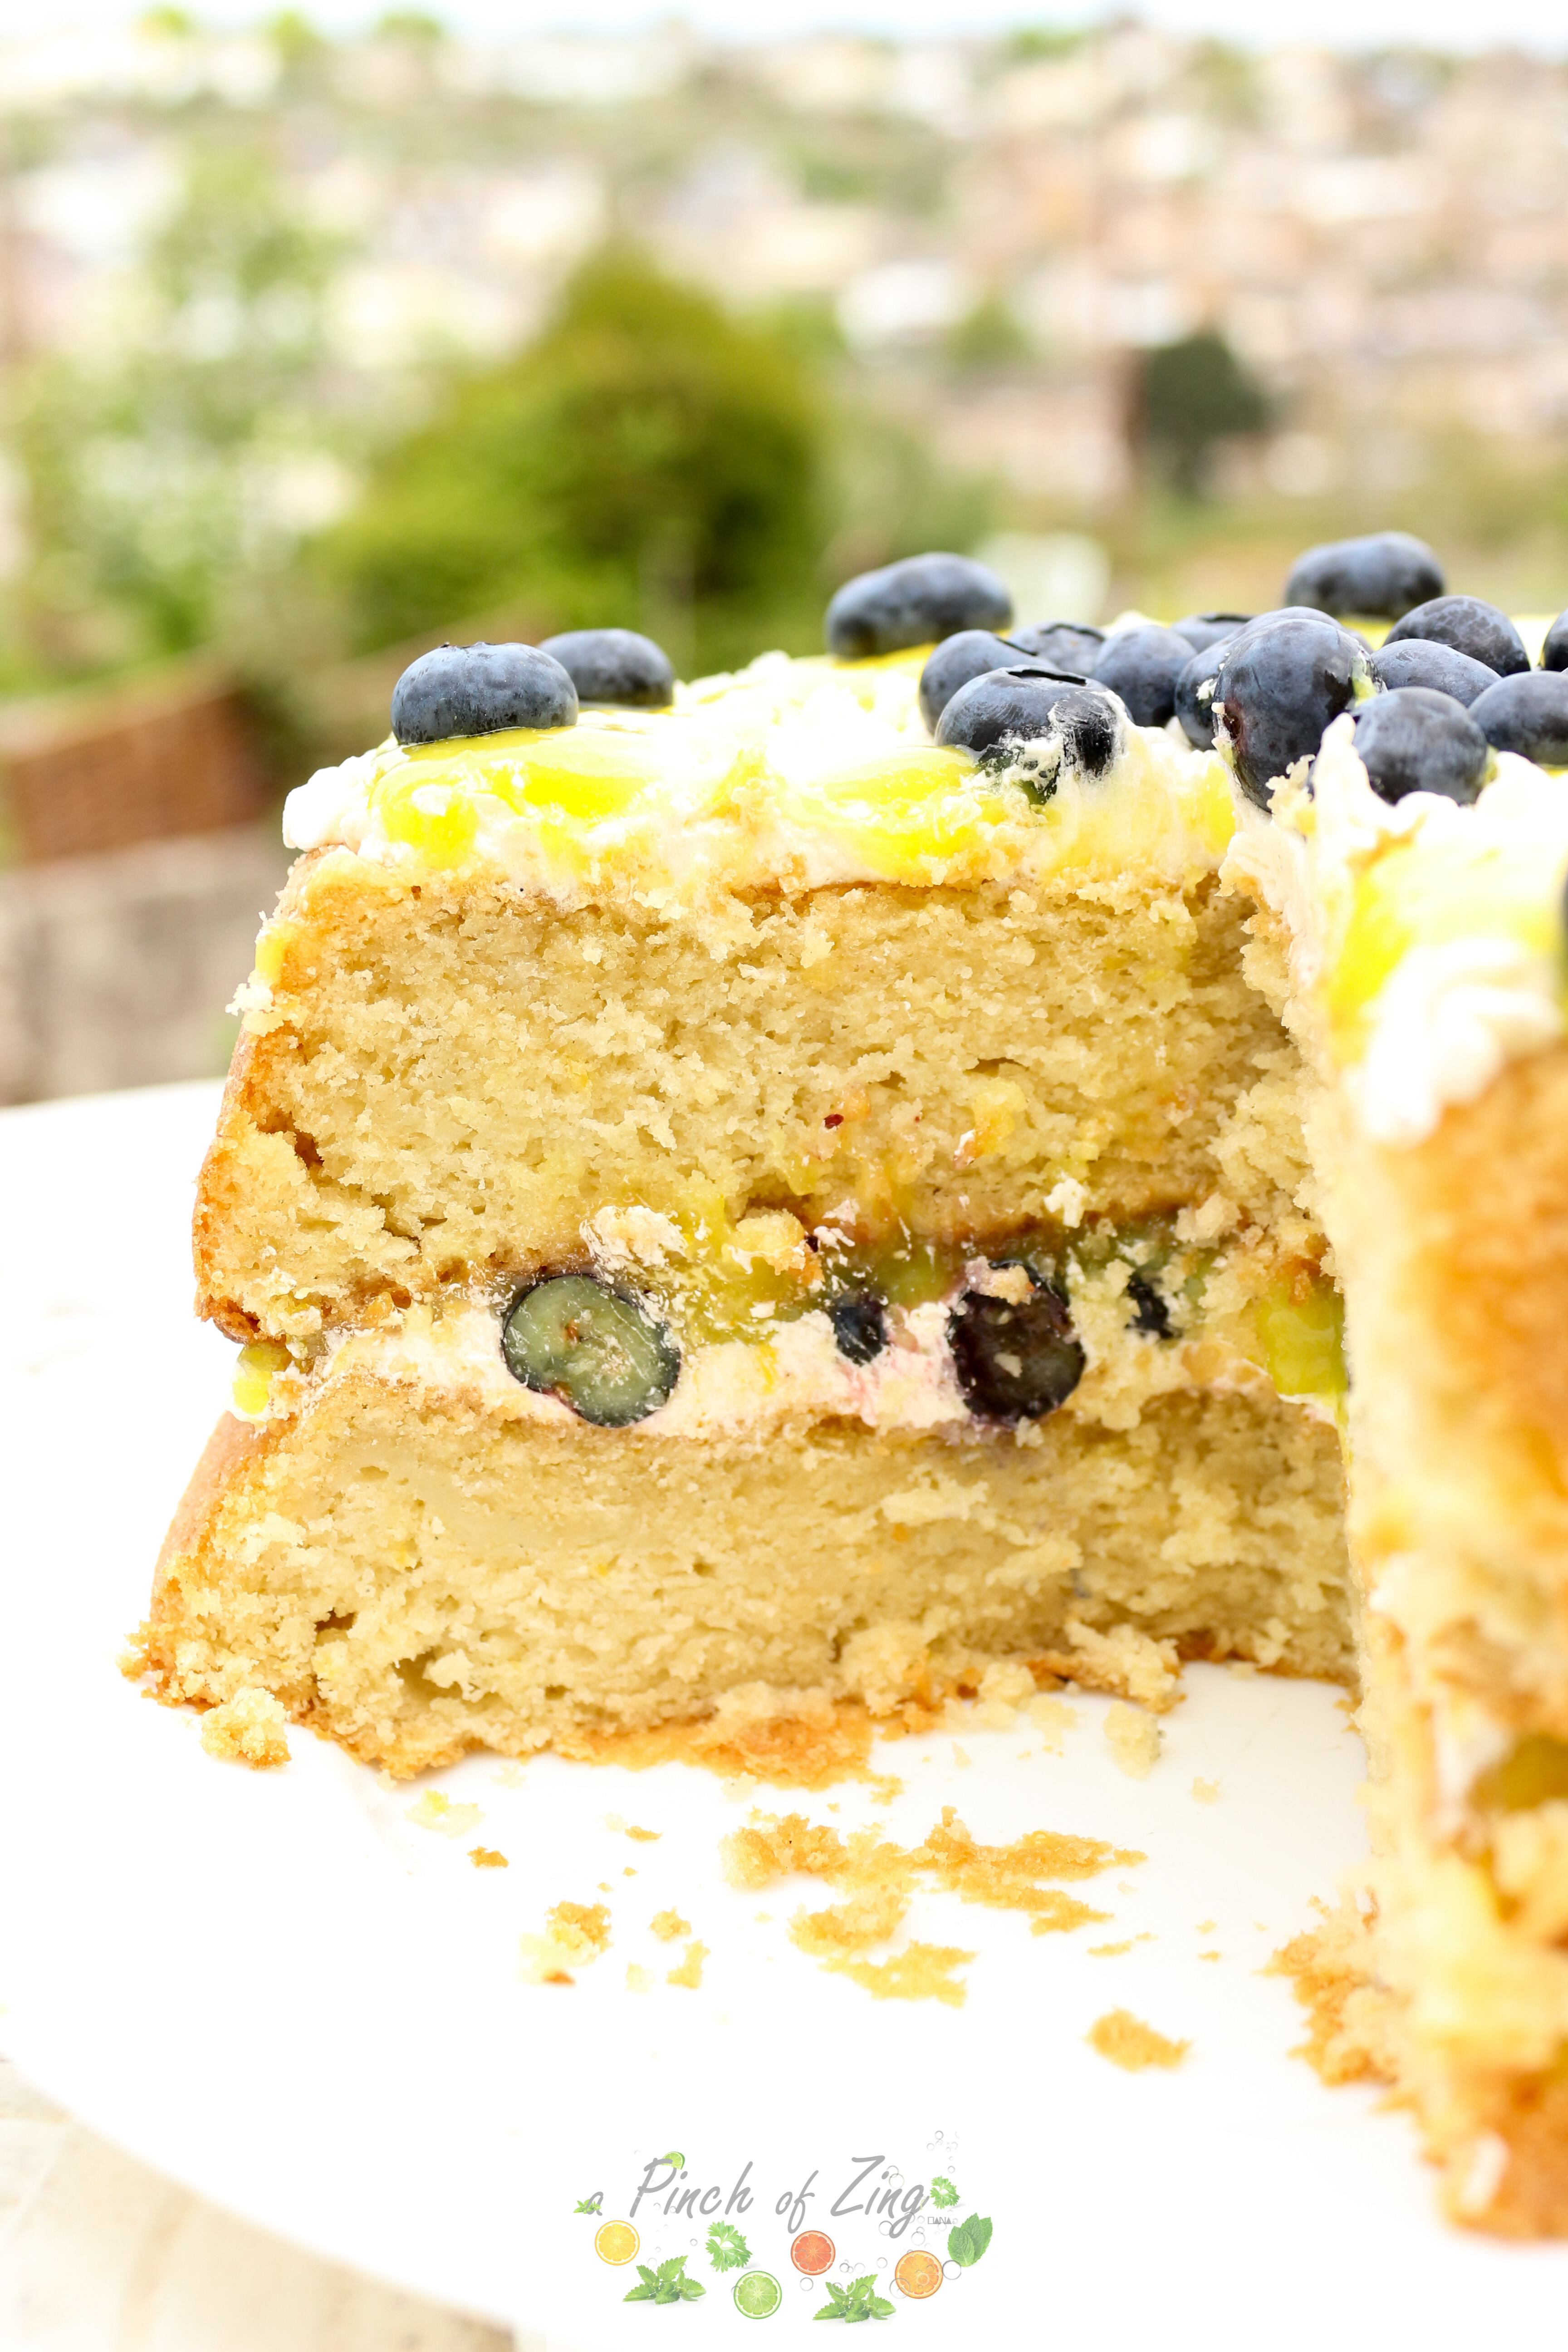 Vegan Lemon and Blueberry cake